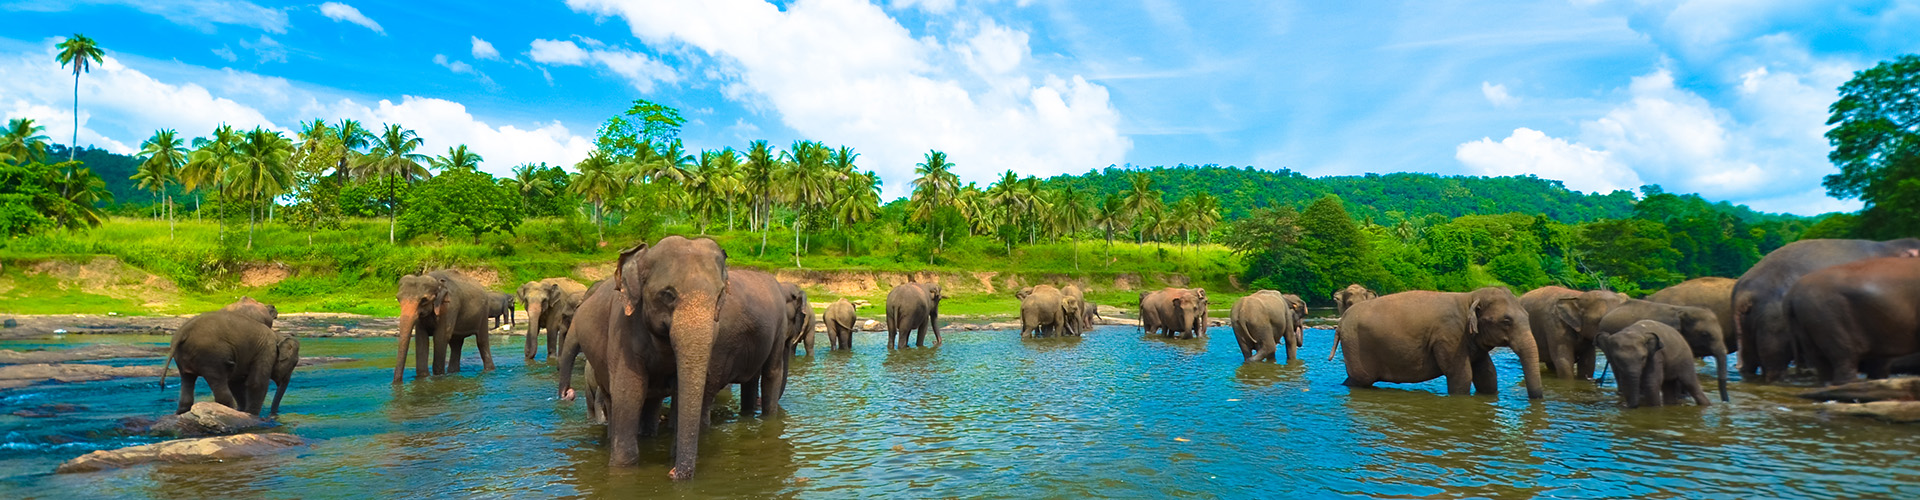 tourhub | Intrepid Travel | Sri Lanka Family Holiday  | HHFL